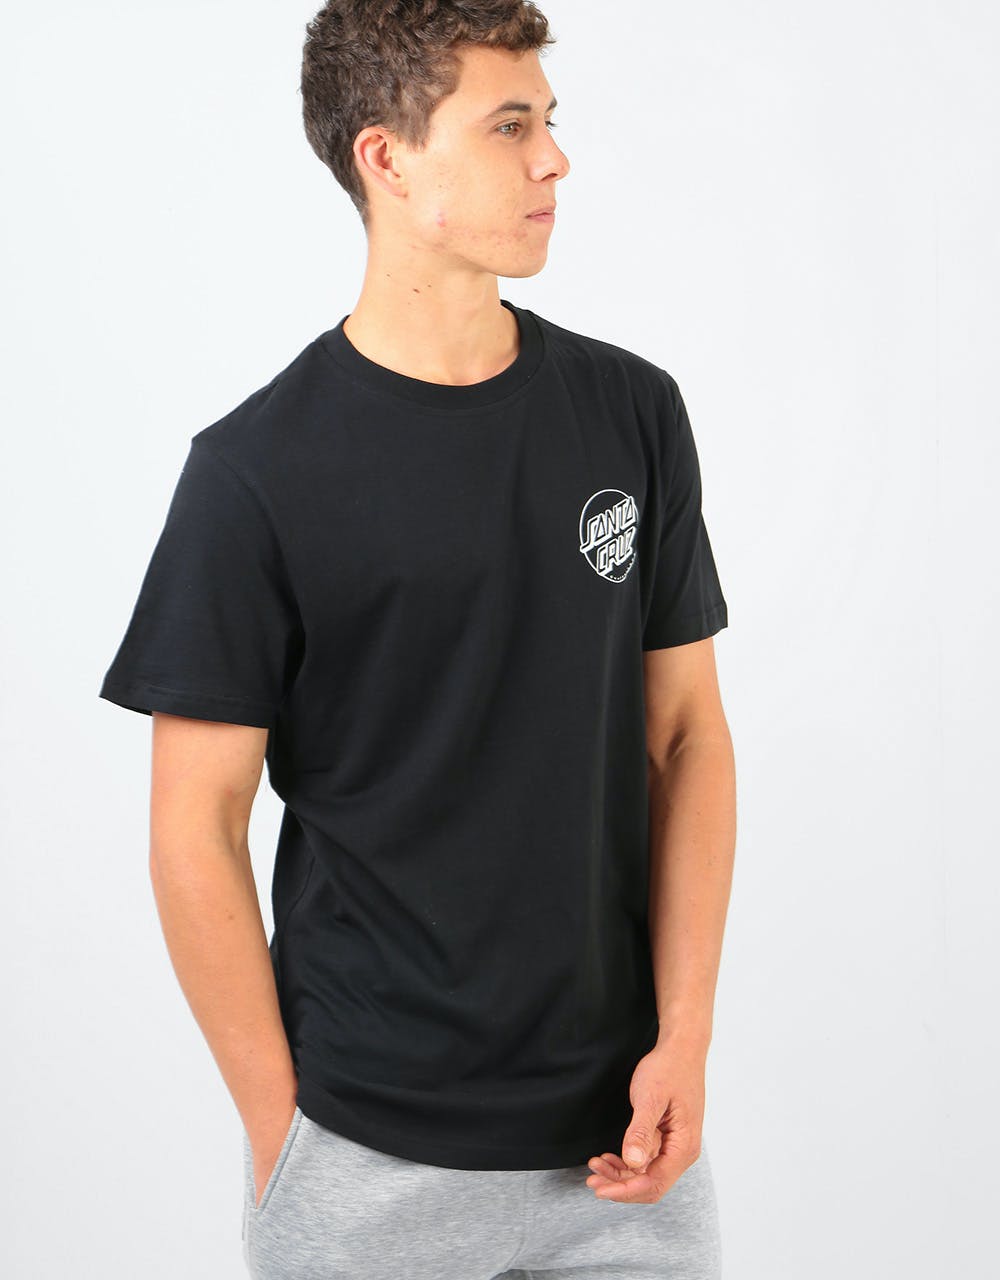 Santa Cruz Rob Face 2 T-Shirt - Black